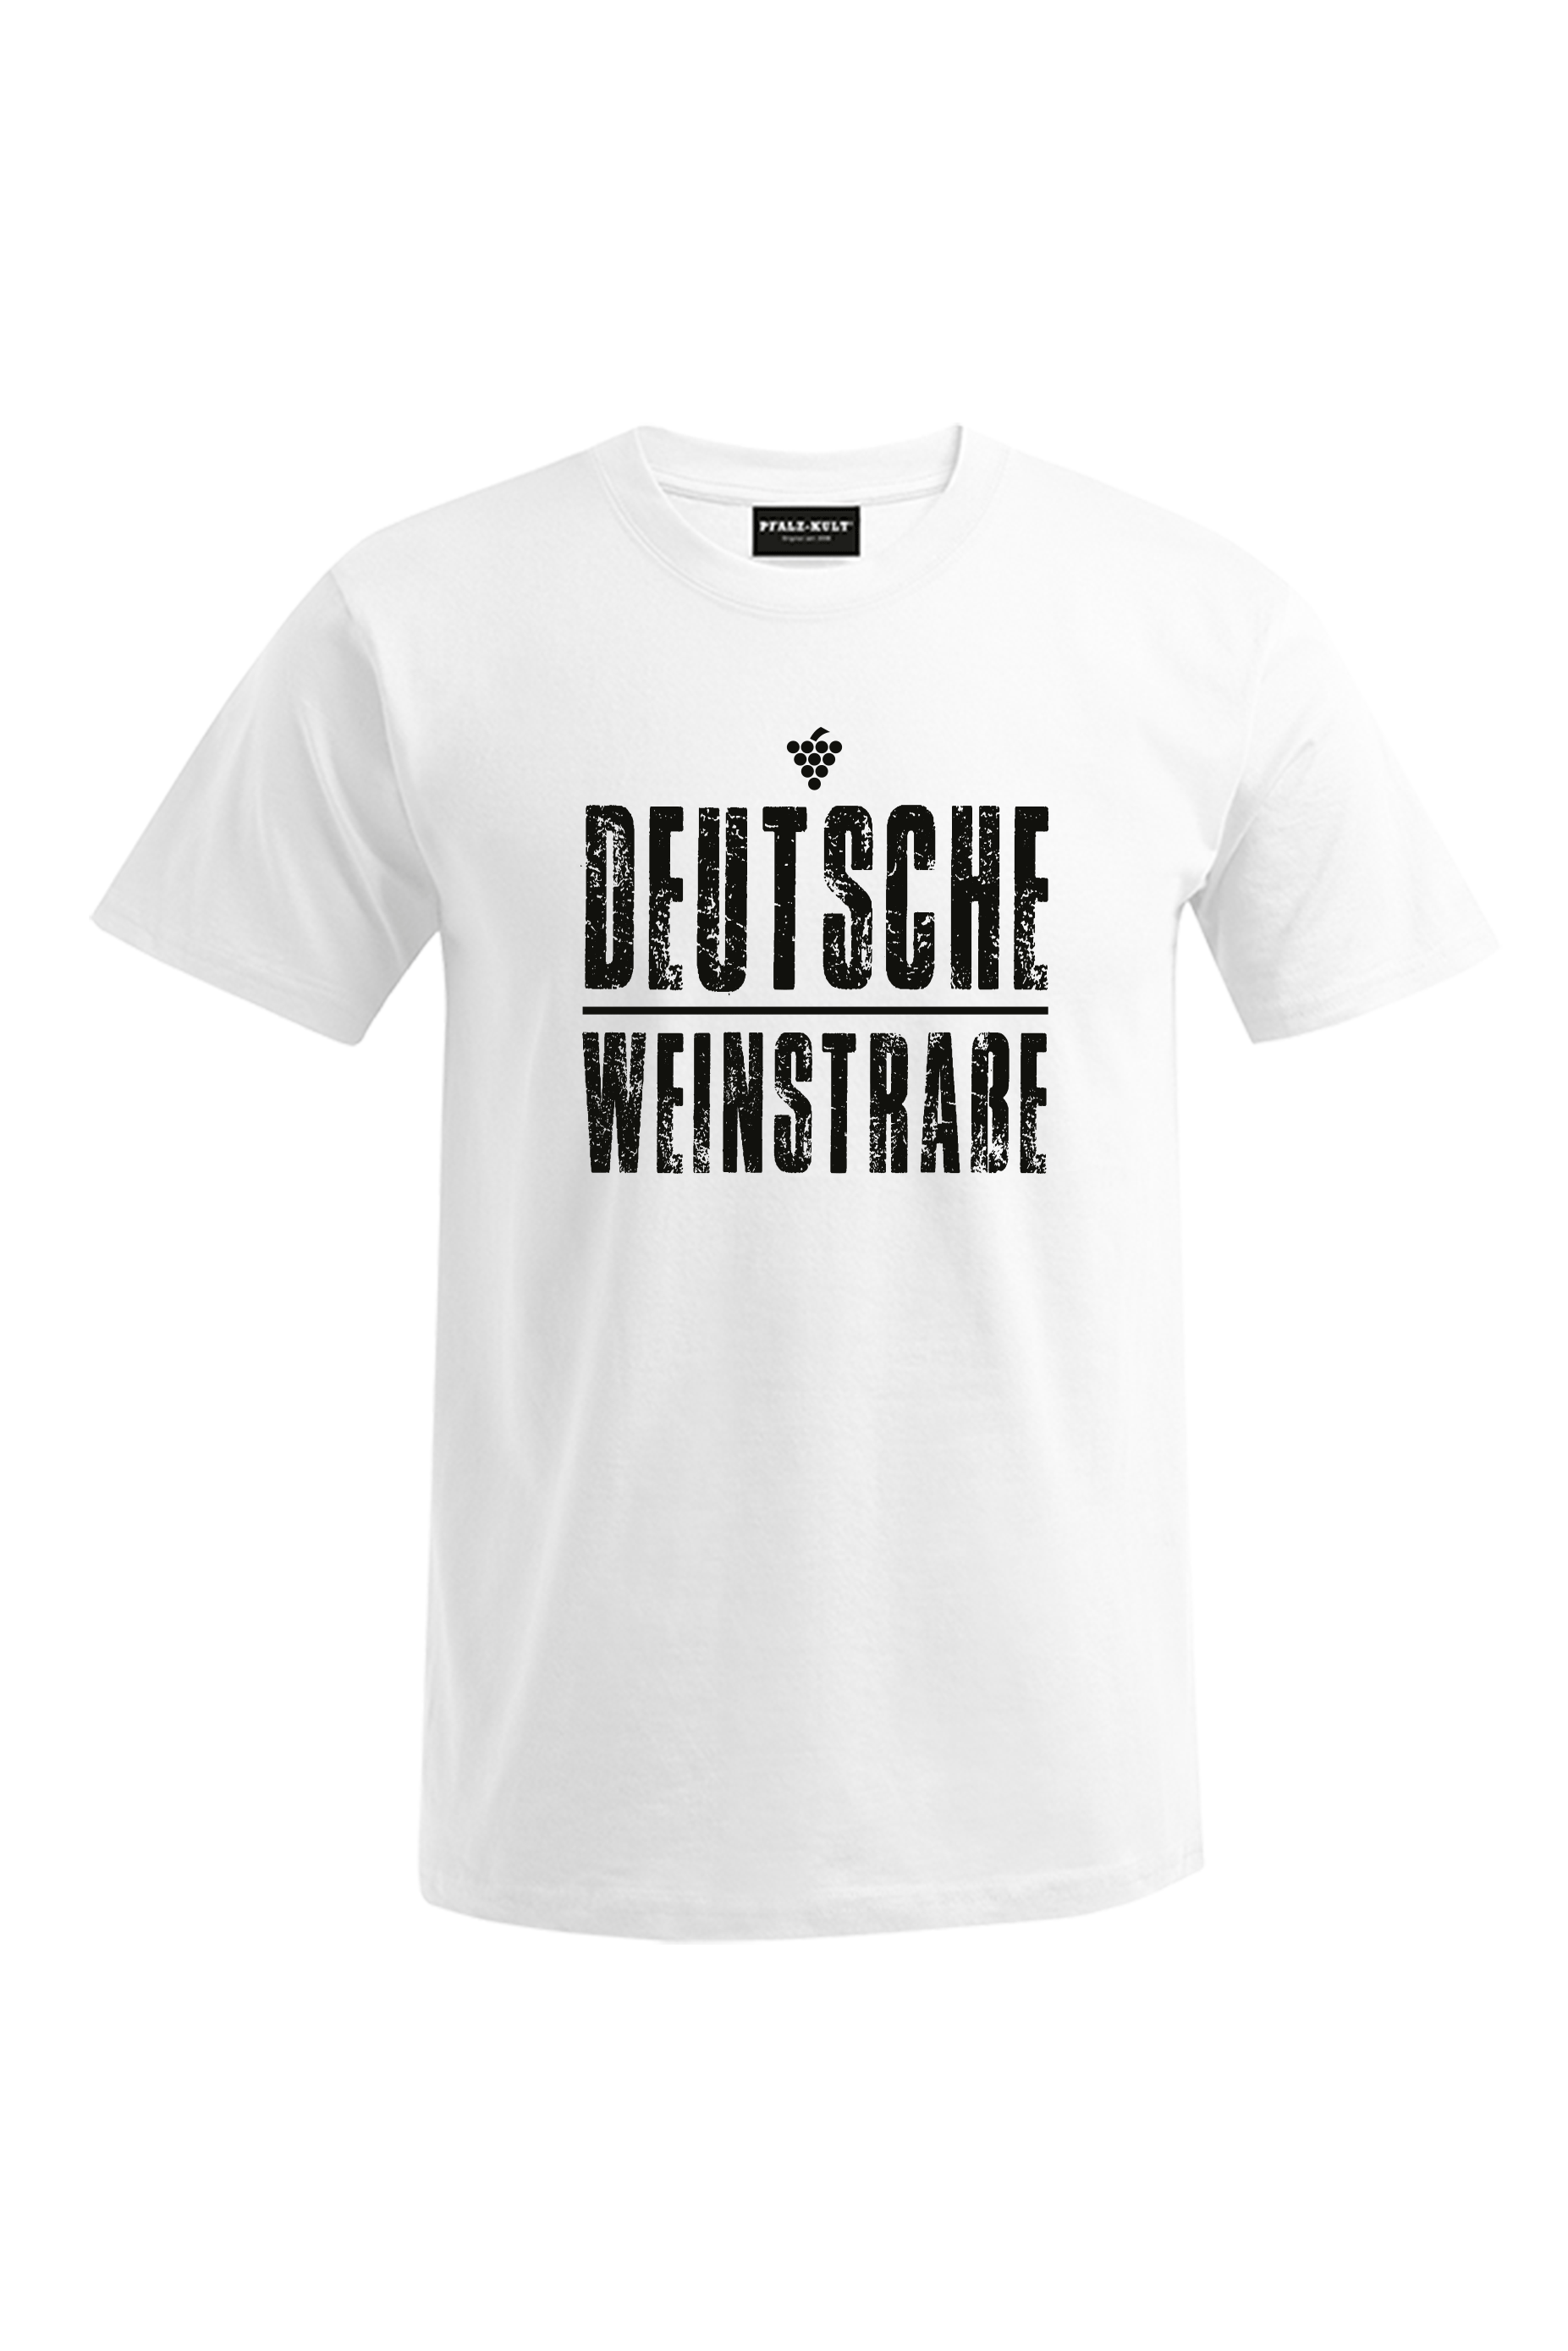 Weißes T-Shirt mit dem Aufdruck "Deutsche Weinstrasse" .  Das ideale Geschenk für jedes Pfalzkind vom Textildruck Spezialisten aus Bad Dürkheim.